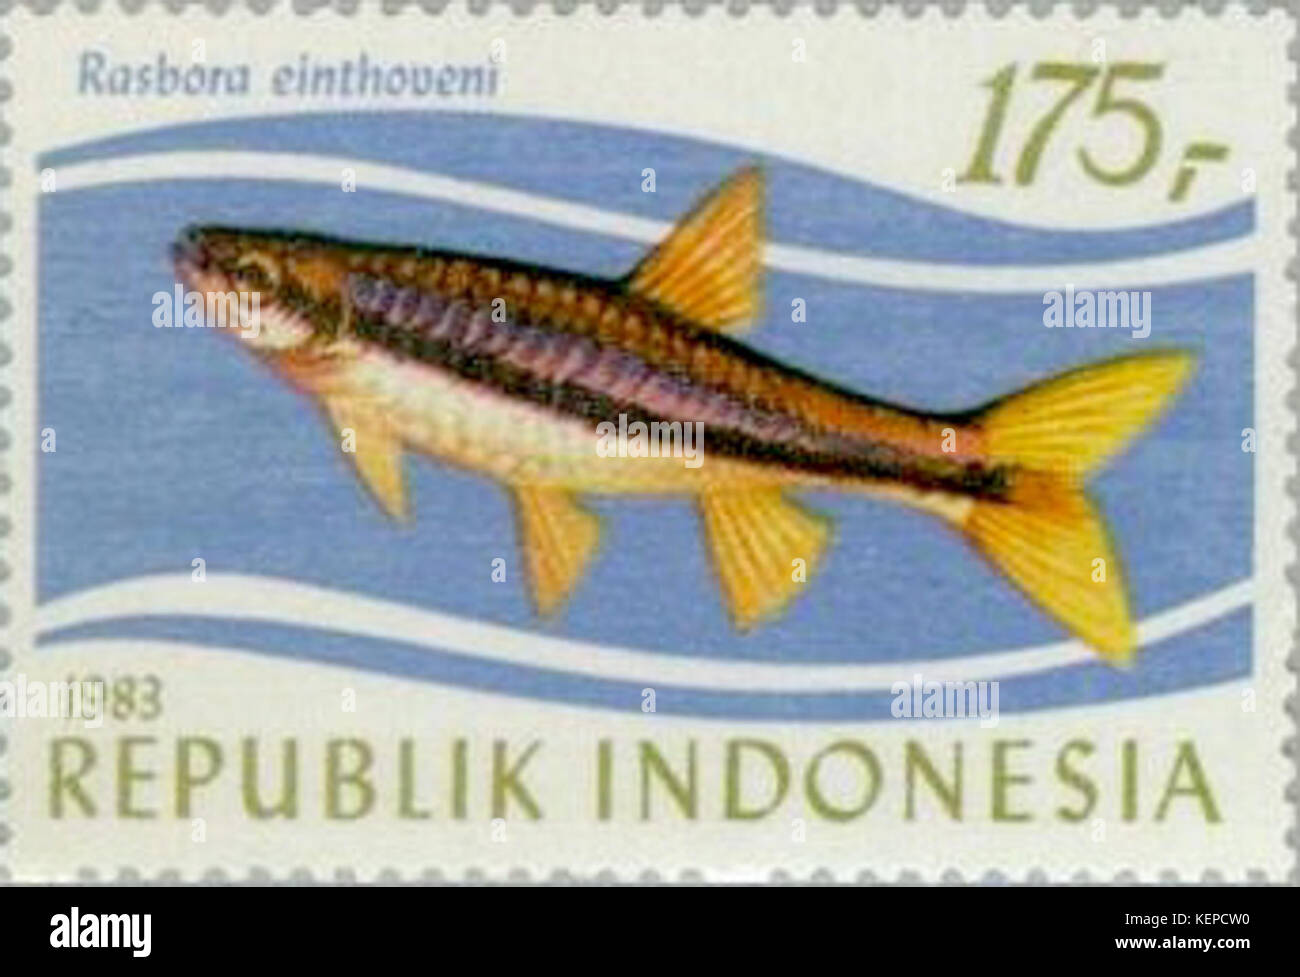 Rasbora einthovenii 1983 Indonesia stamp Stock Photo